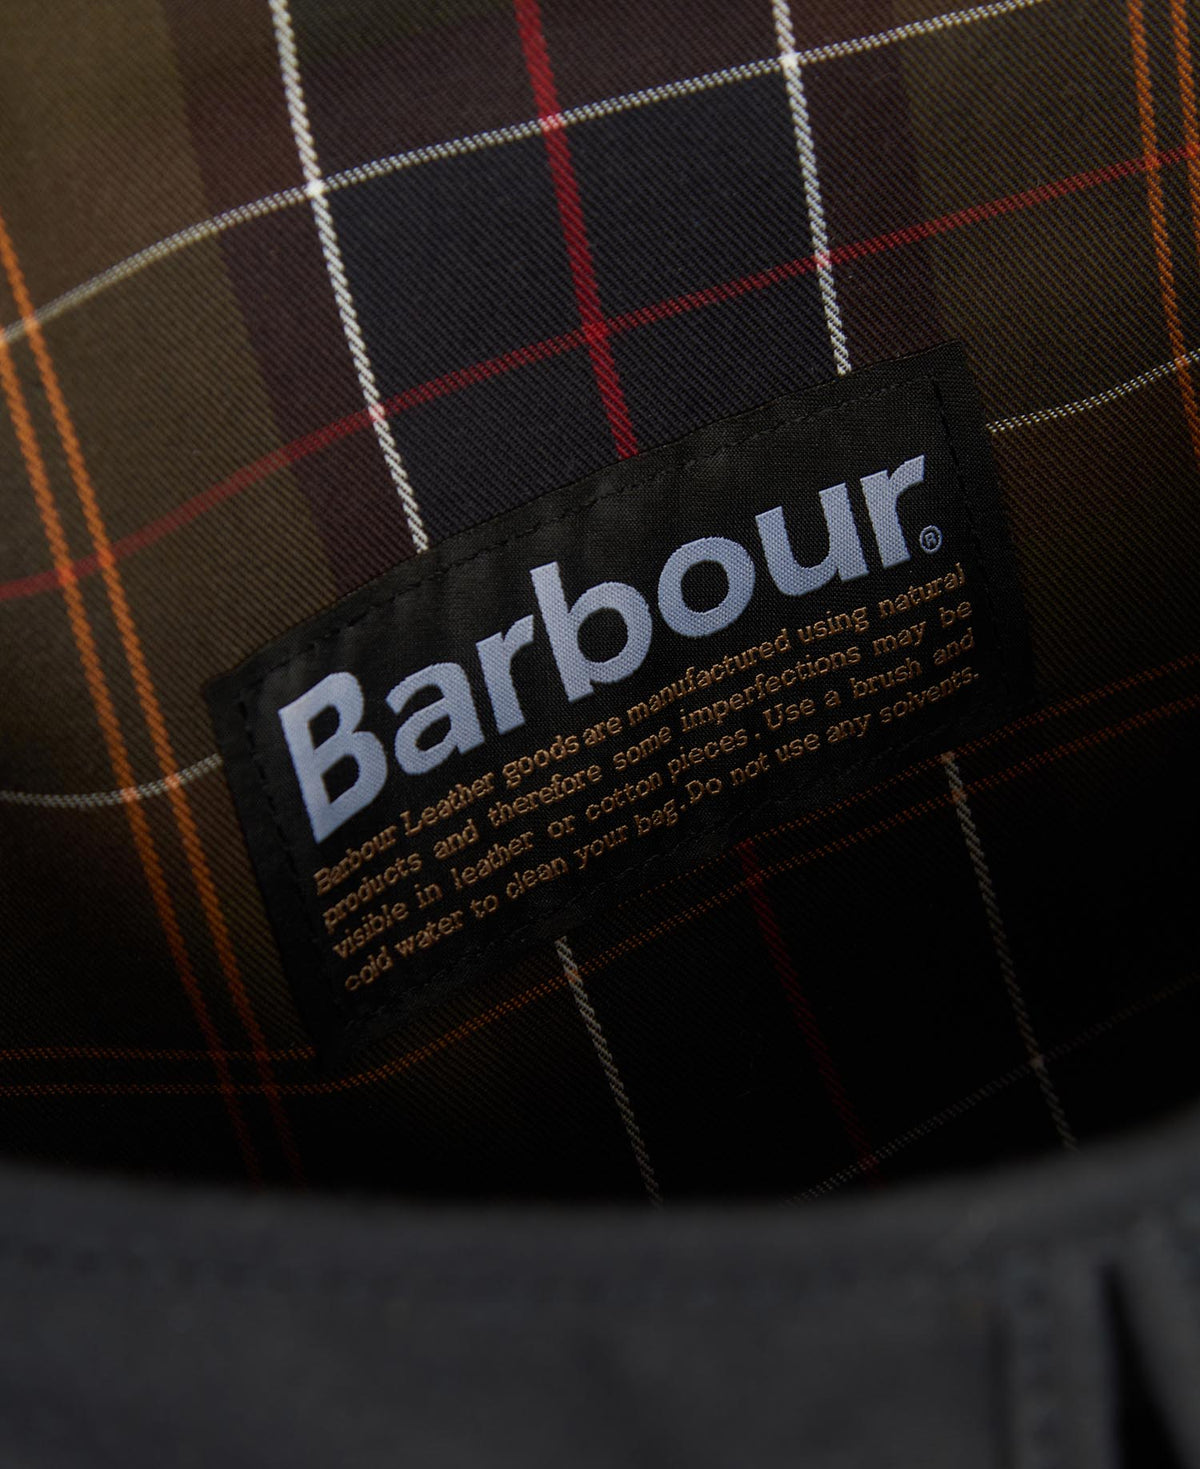 Barbour Wax-Ledertasche Tarras